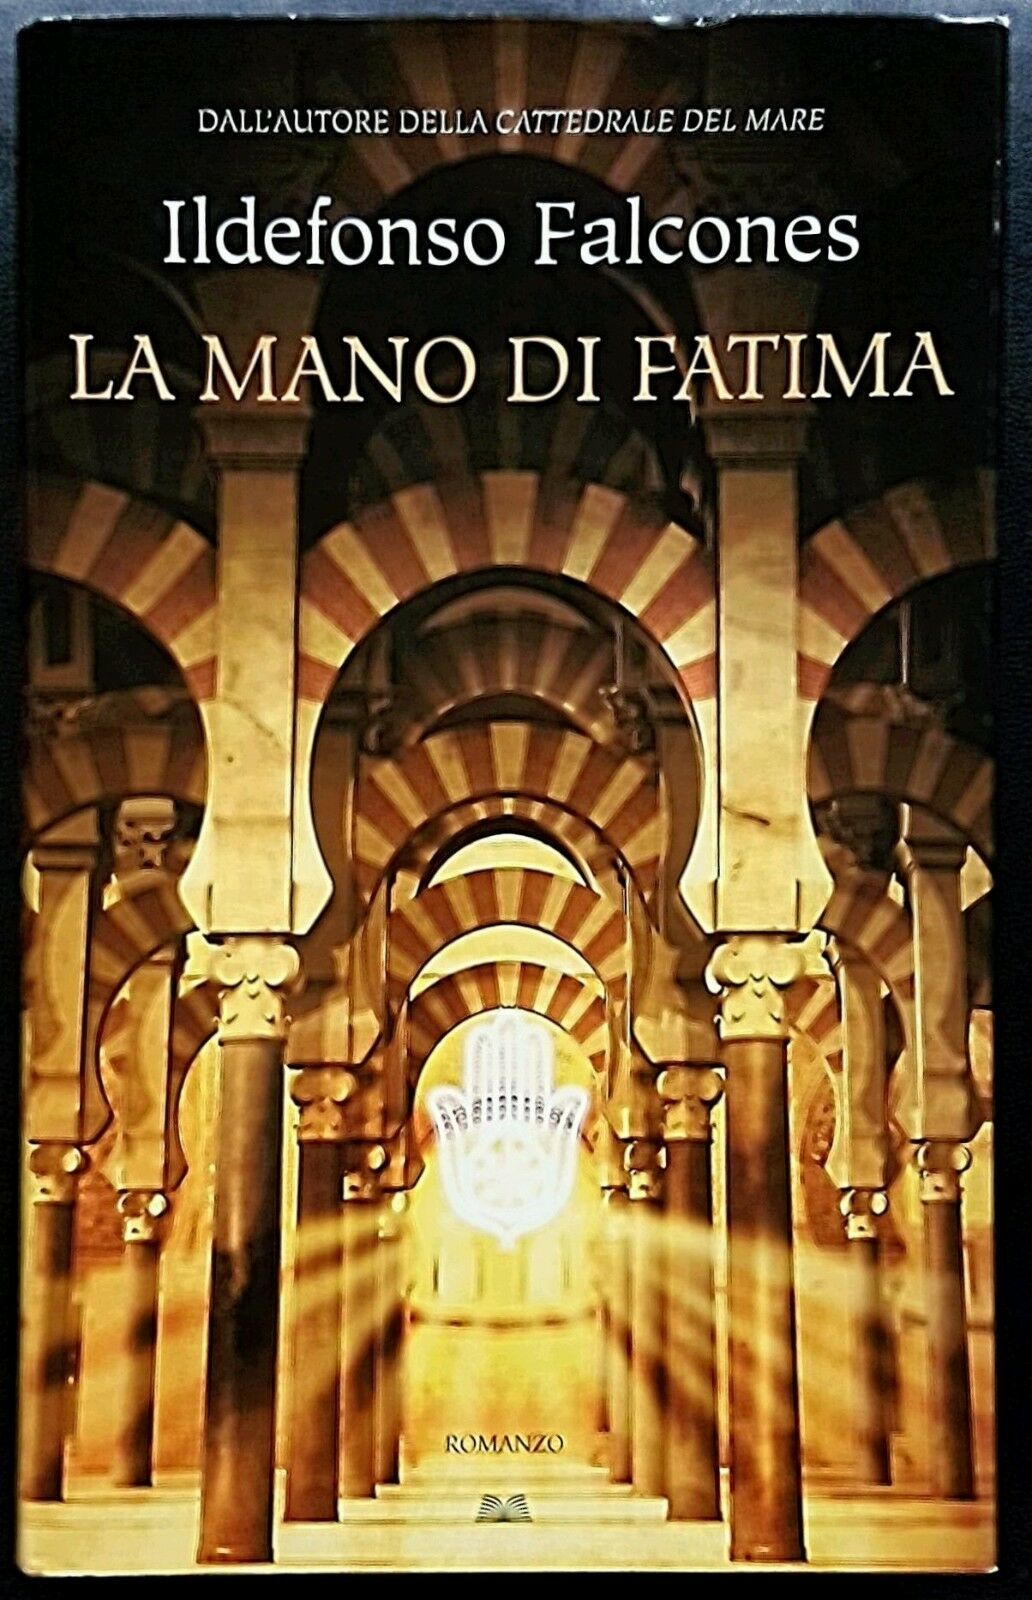 Ildefonso-Falcones-La-mano-di-Fatima-Ed-MondoLibri-2010-263421243778